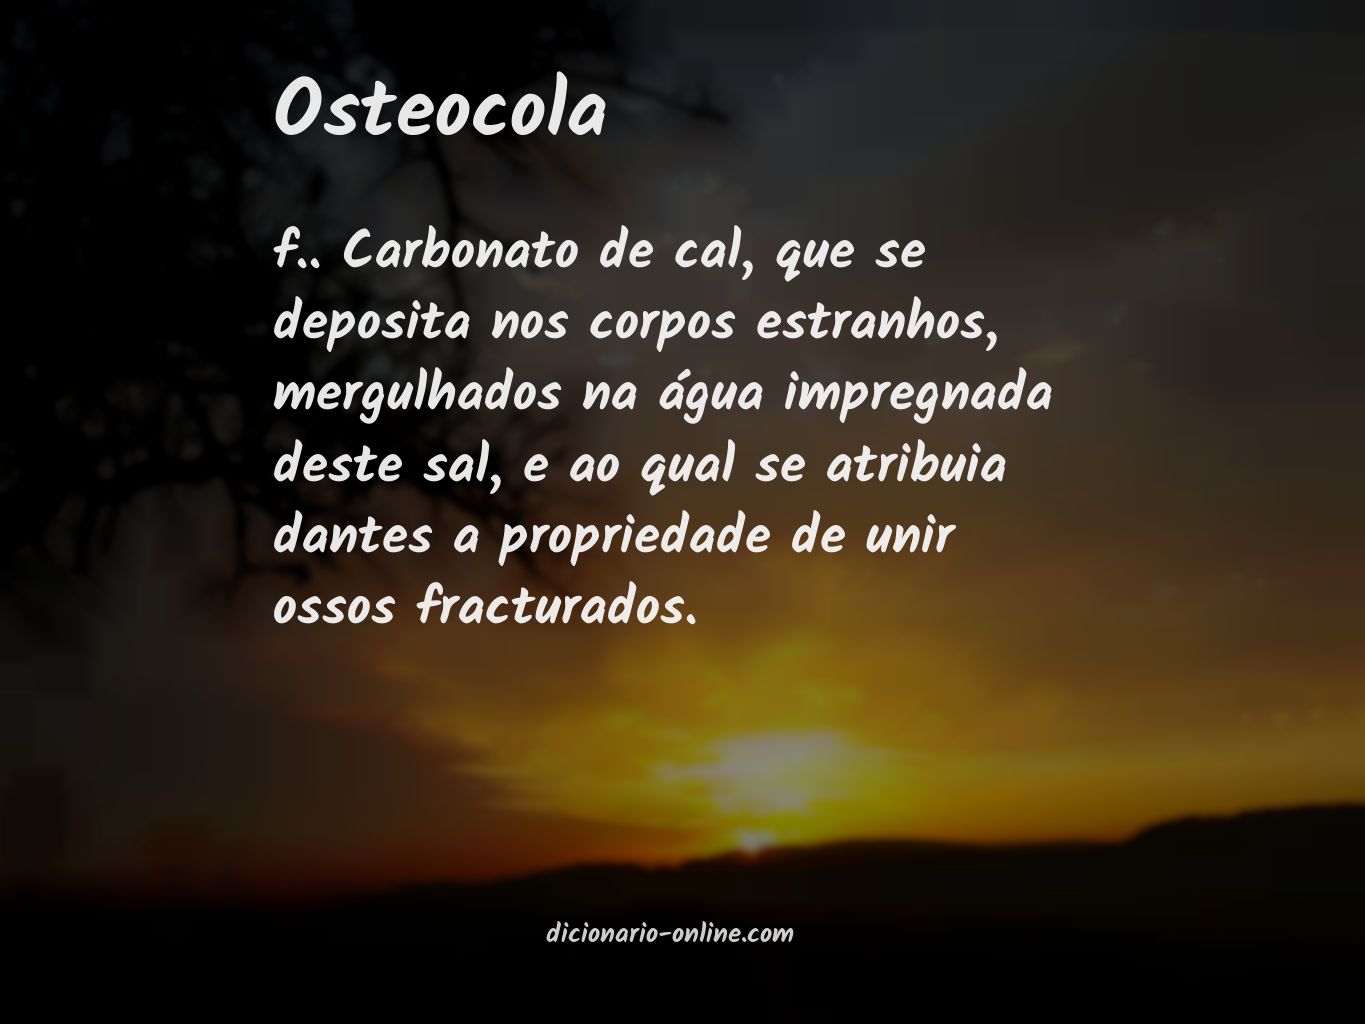 Significado de osteocola